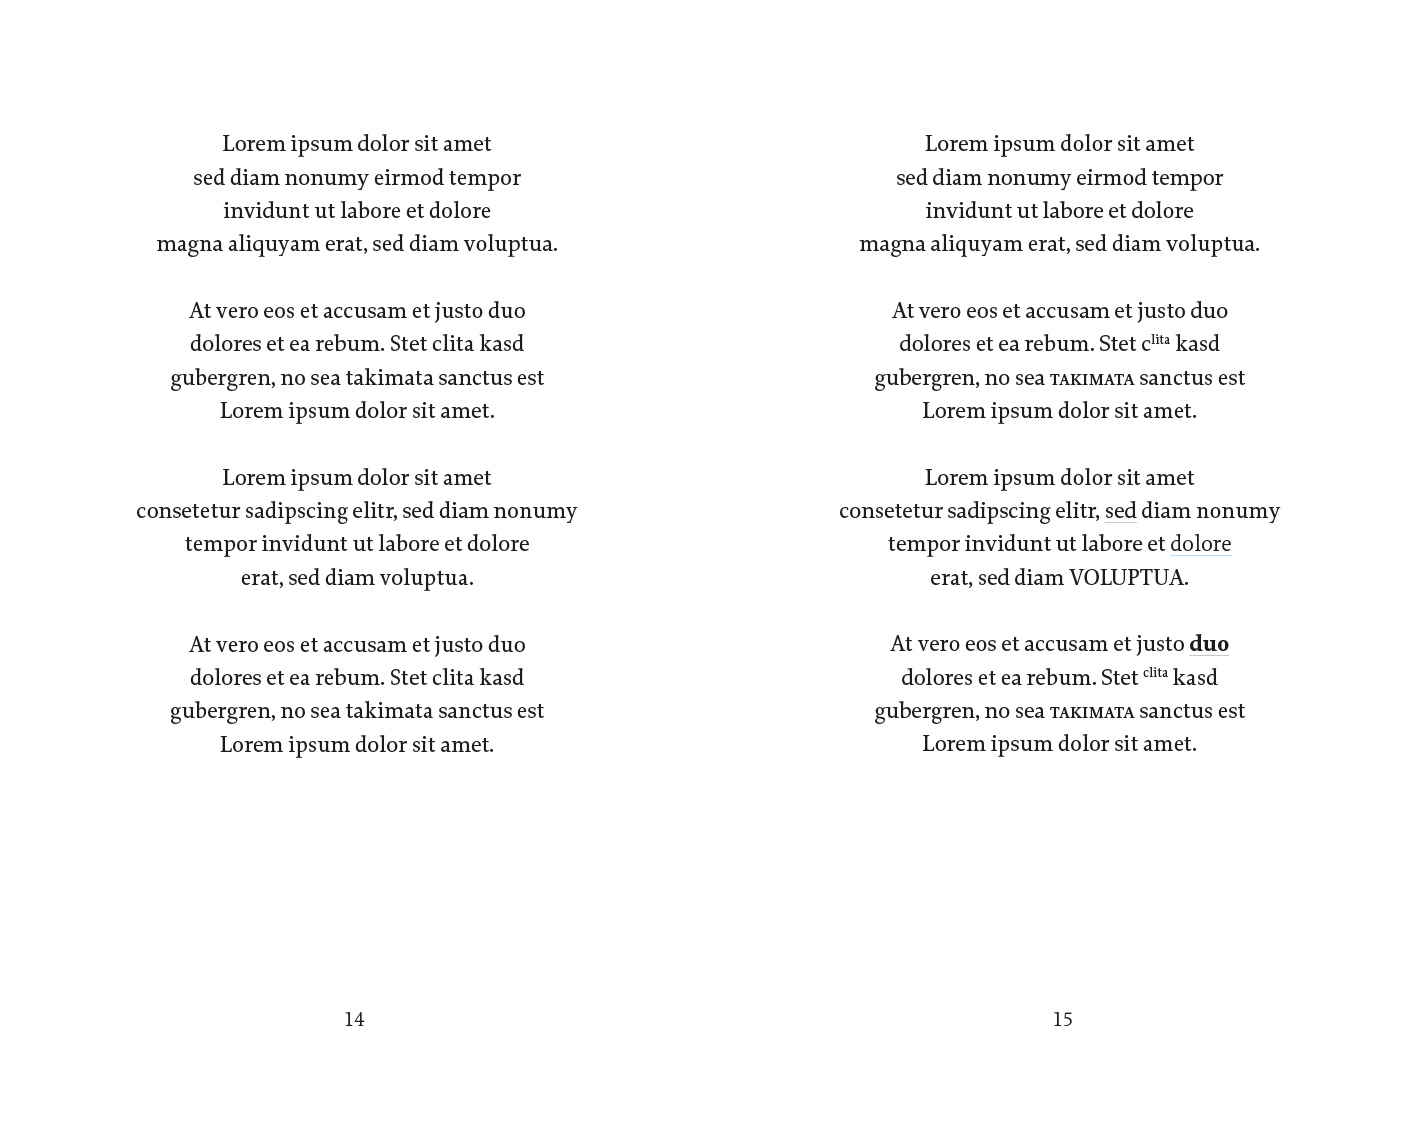 Exemple d'une mise en page de poésie classique version romantique